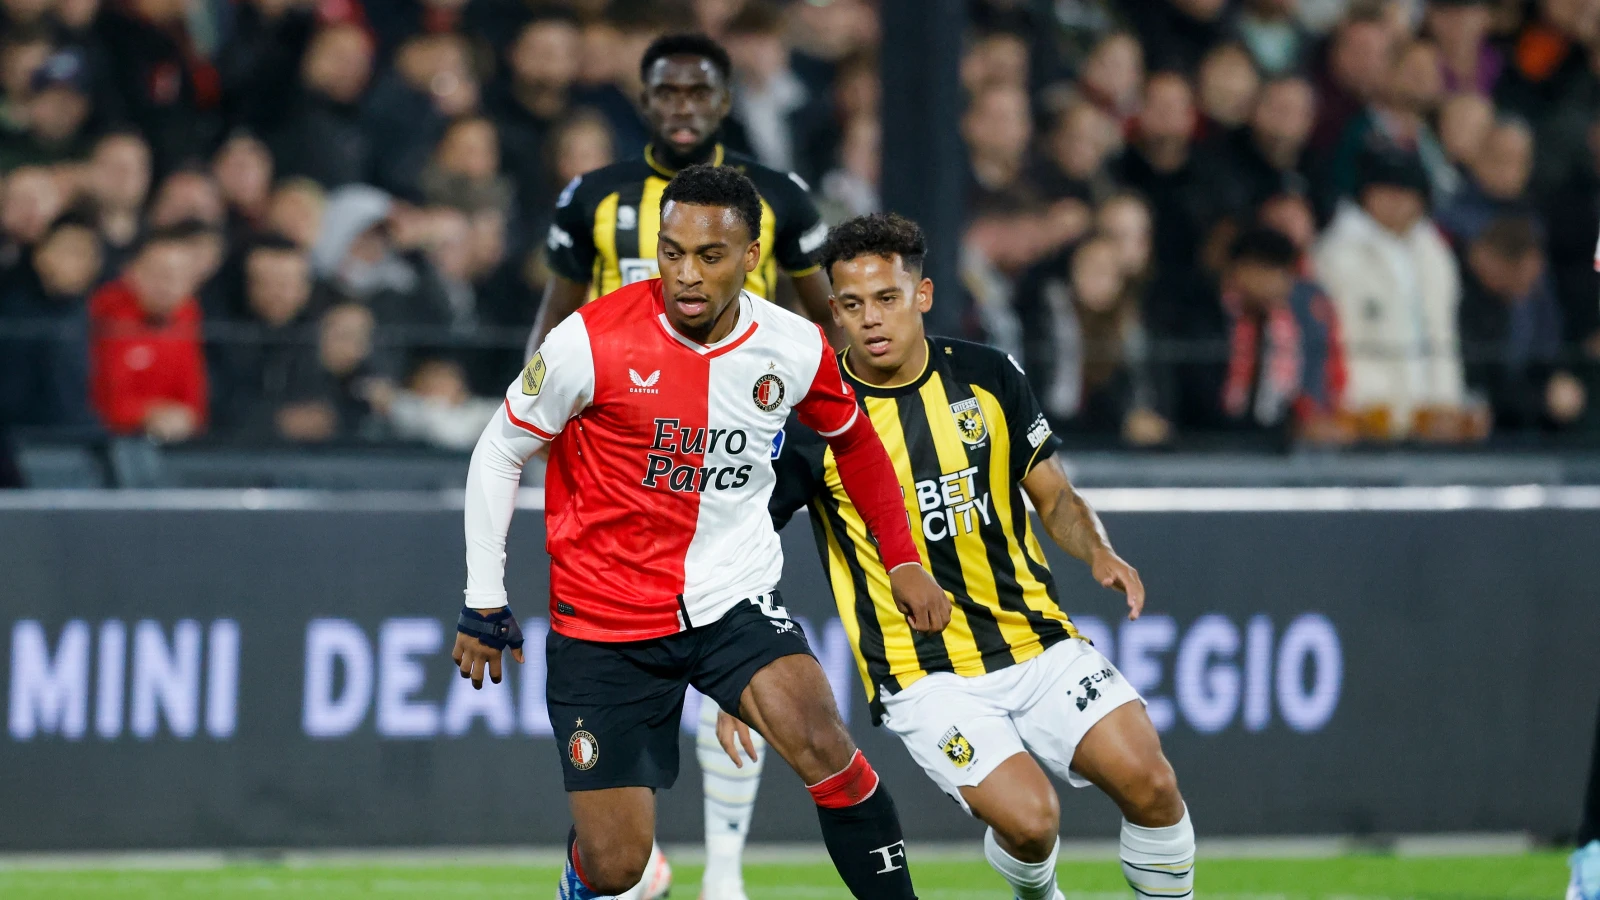 LIVE | Feyenoord - Vitesse 4-0 | Einde wedstrijd